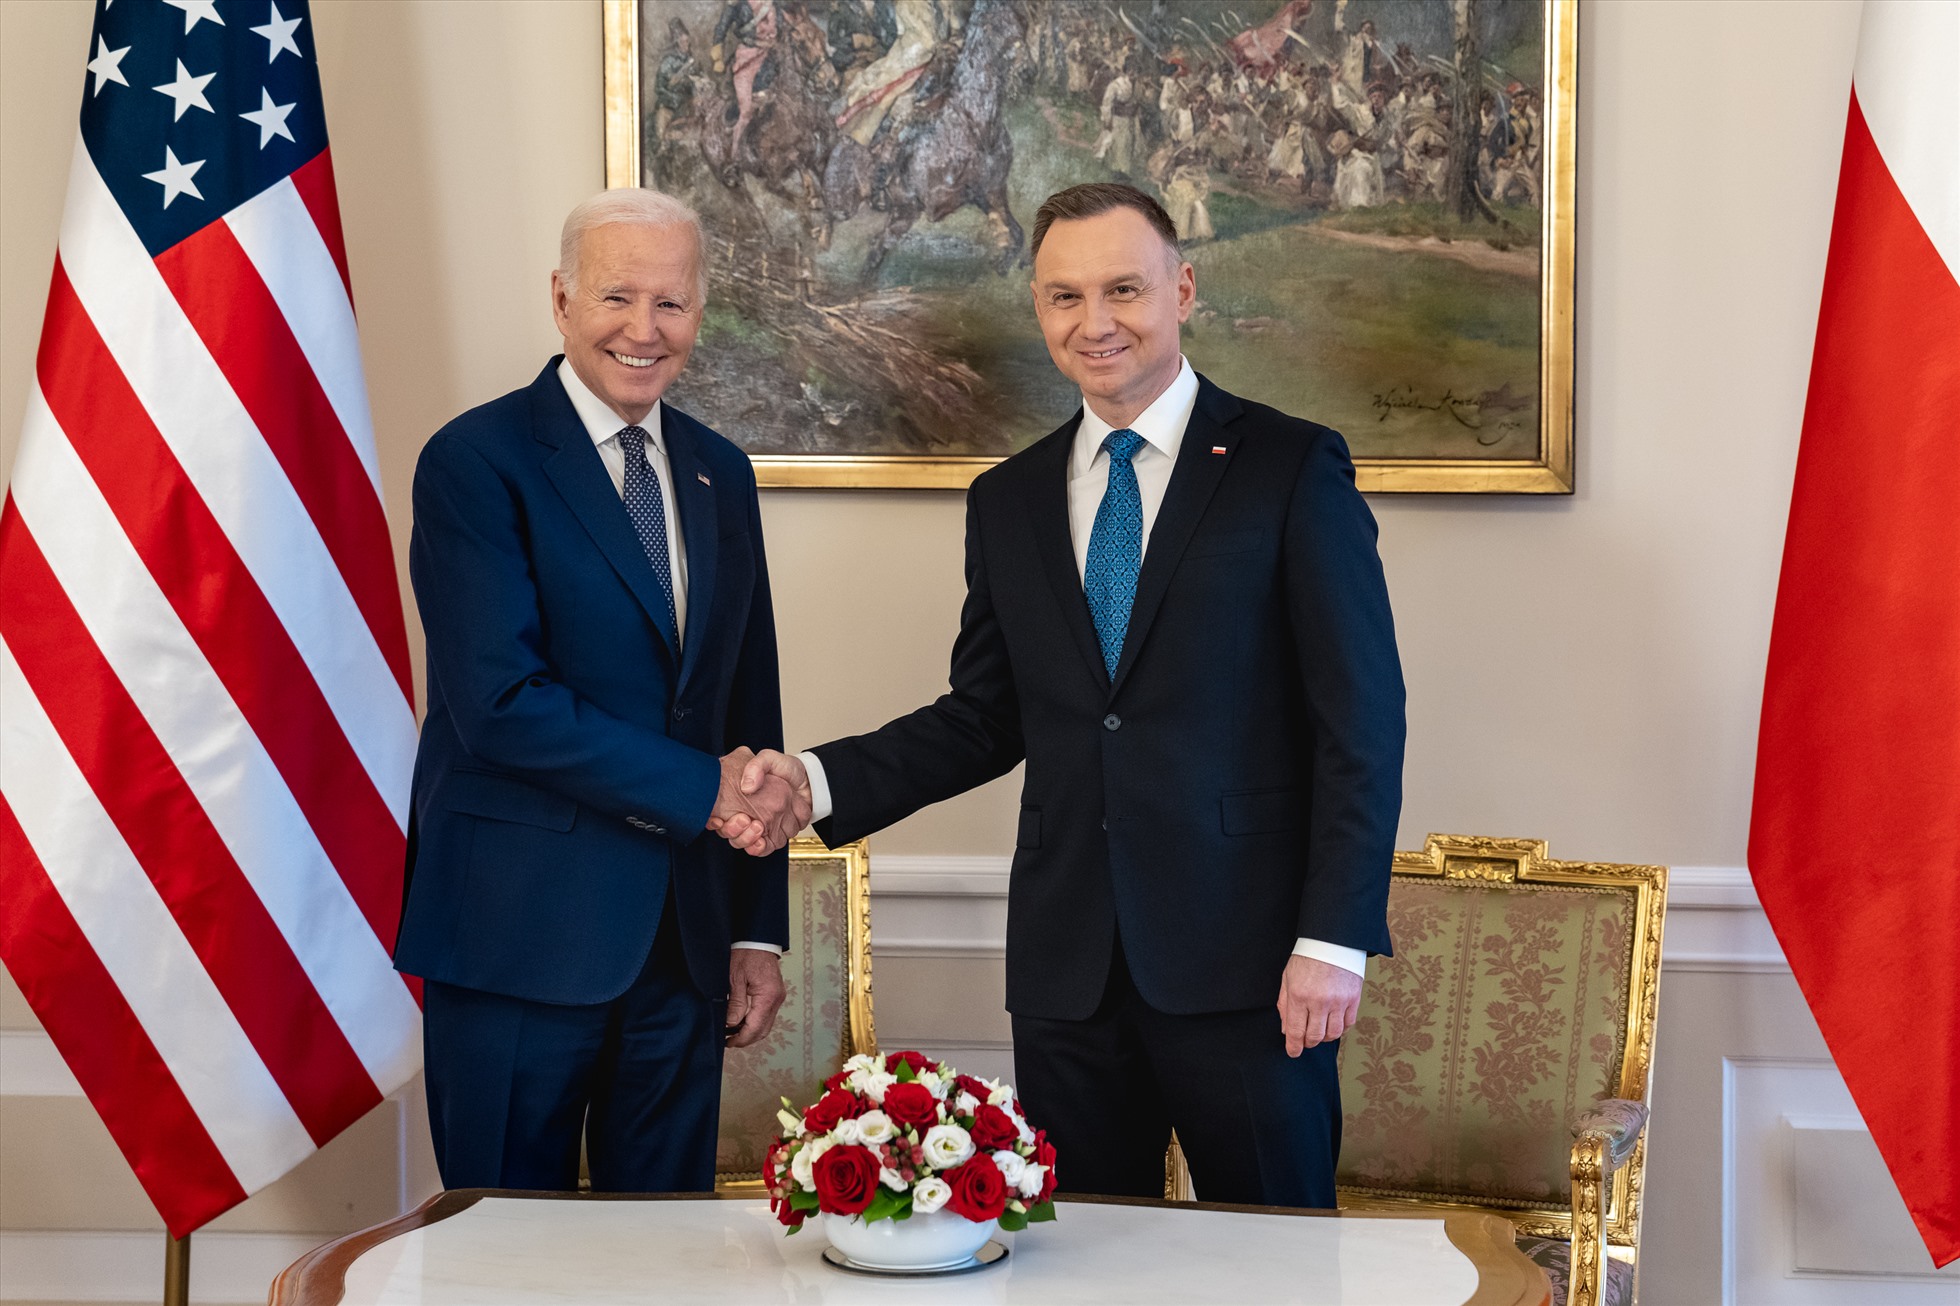 Ngày 21.2.2023, tại Warsaw, Tổng thống Mỹ Joe Biden gặp Tổng thống Ba Lan Andrzej Duda để thảo luận về quan hệ quốc phòng song phương, nỗ lực chung để hỗ trợ Ukraine và củng cố NATO. Ảnh: Nhà Trắng